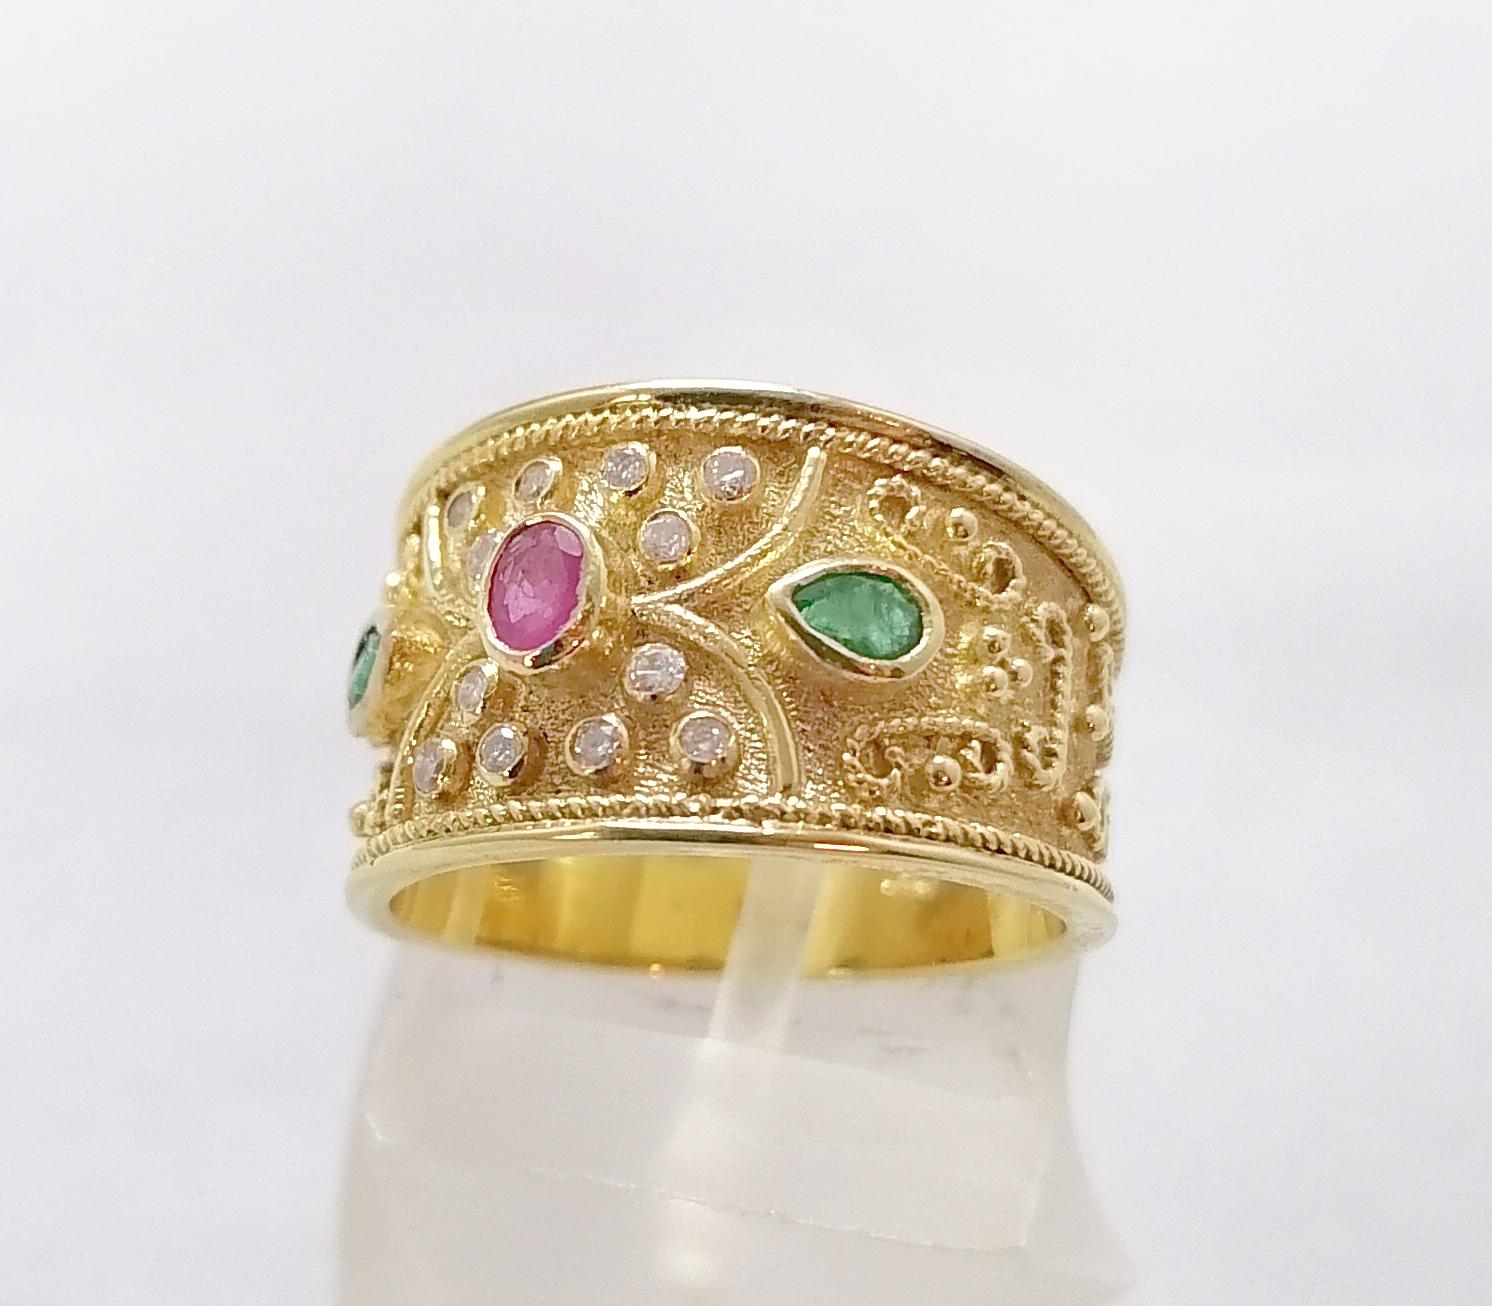 Dieser S.Georgios Designer 18 Karat Gelbgold Multicolor Ring mit breitem Band ist komplett handgefertigt mit byzantinischer Perlengranulation und einem einzigartigen Samthintergrund. Dieser wunderschöne Ring zeigt in der Mitte einen natürlichen